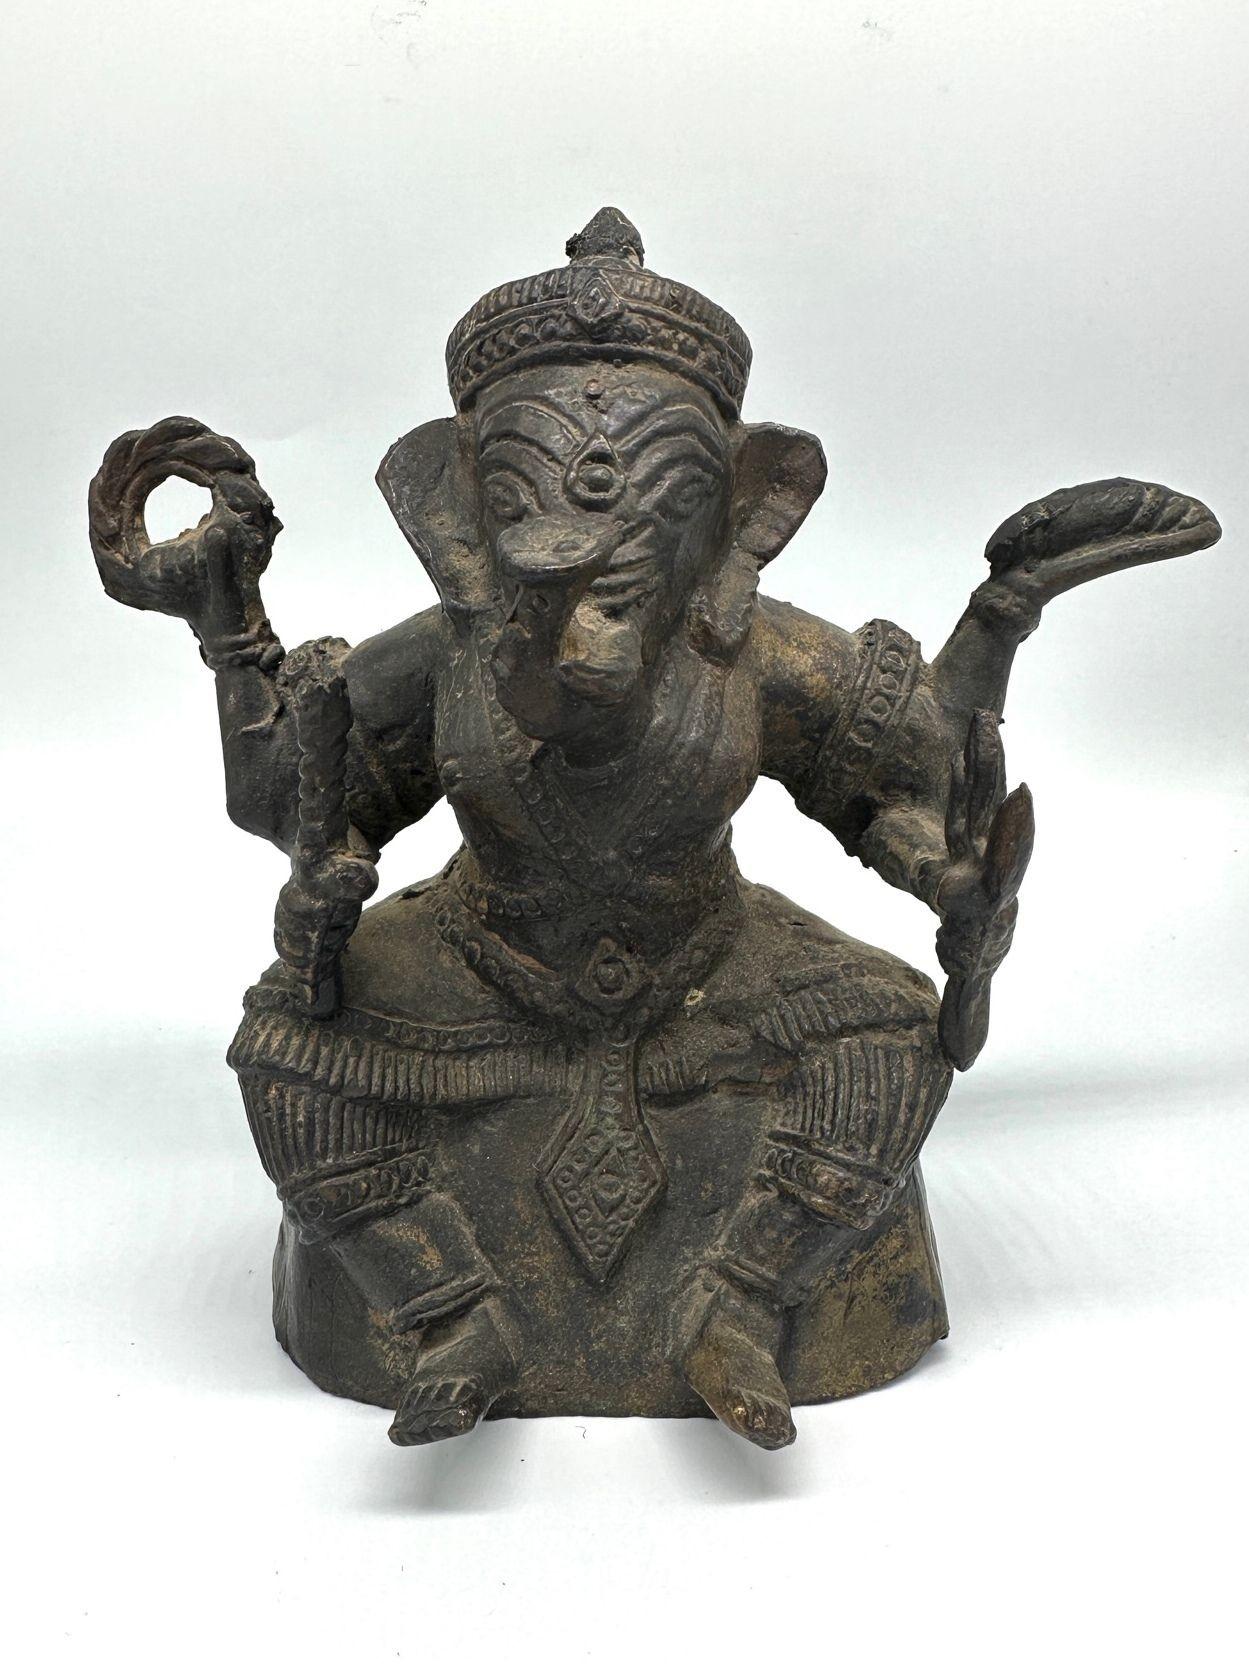 Bronze antique Ganesha Assis Méditation 4 Mains Hindu Ganapati Sculpture de Ganesha, également connu sous le nom de Ganapati, est une divinité hindoue révérée largement vénérée comme l'éliminateur d'obstacles et le dieu de la sagesse.
Représenté